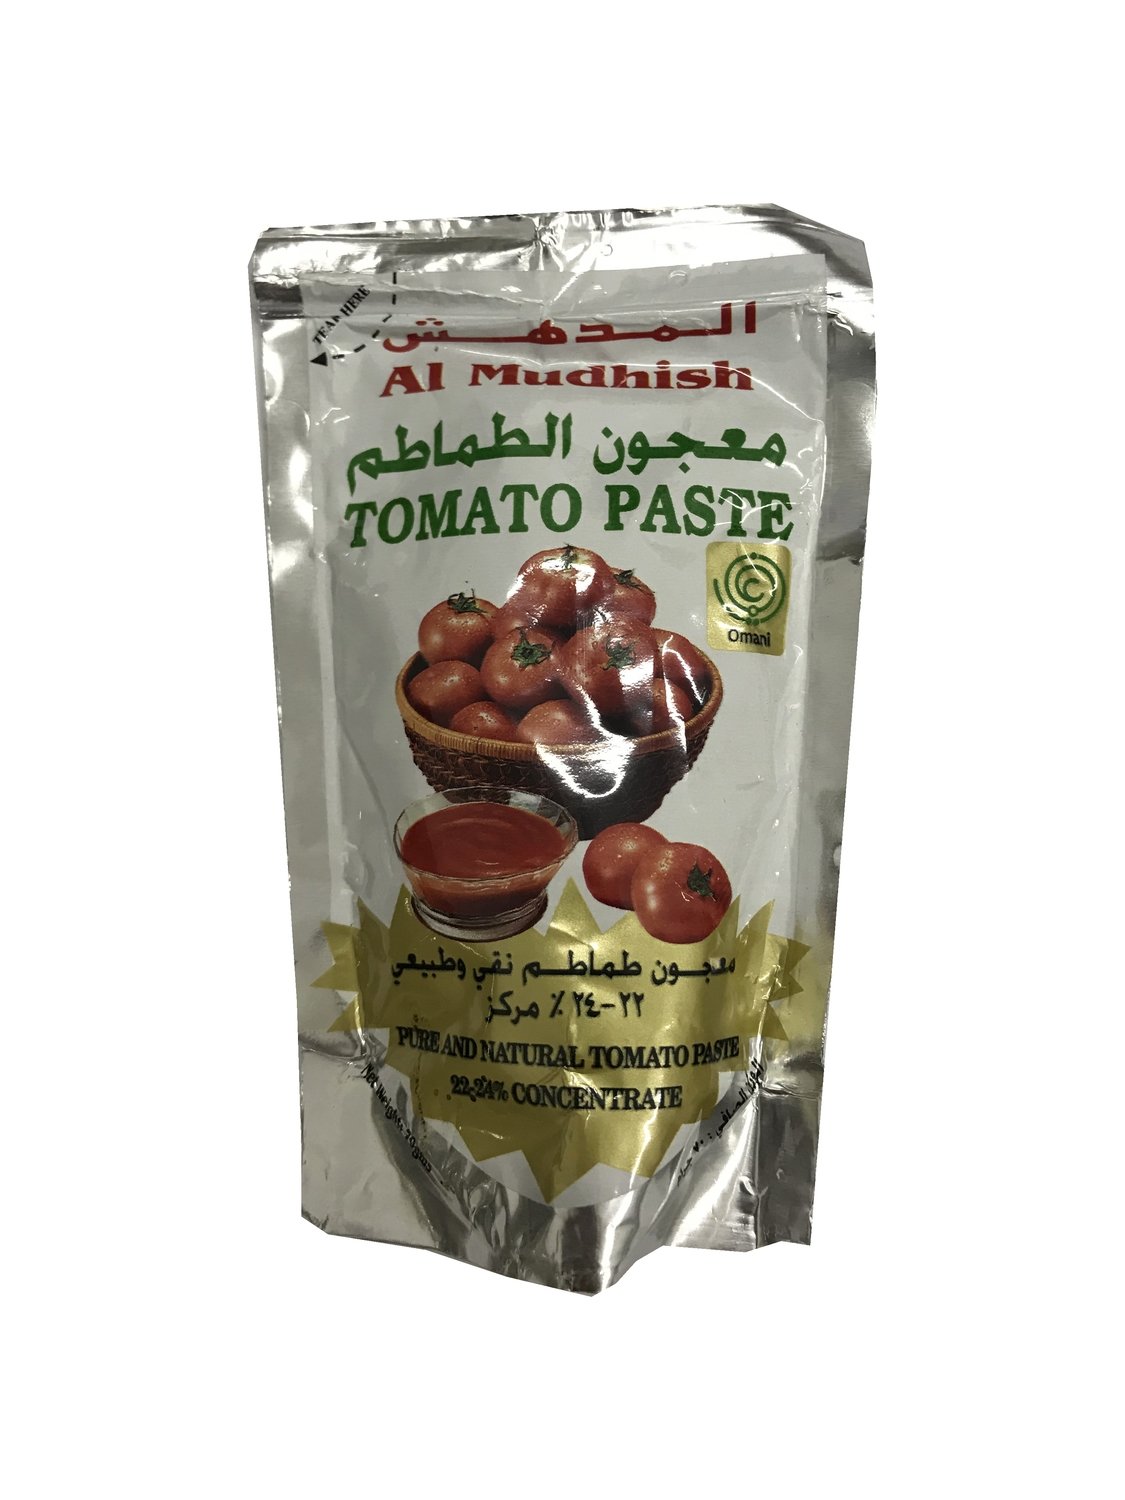 Al Mudhish Tomato Paste 70g